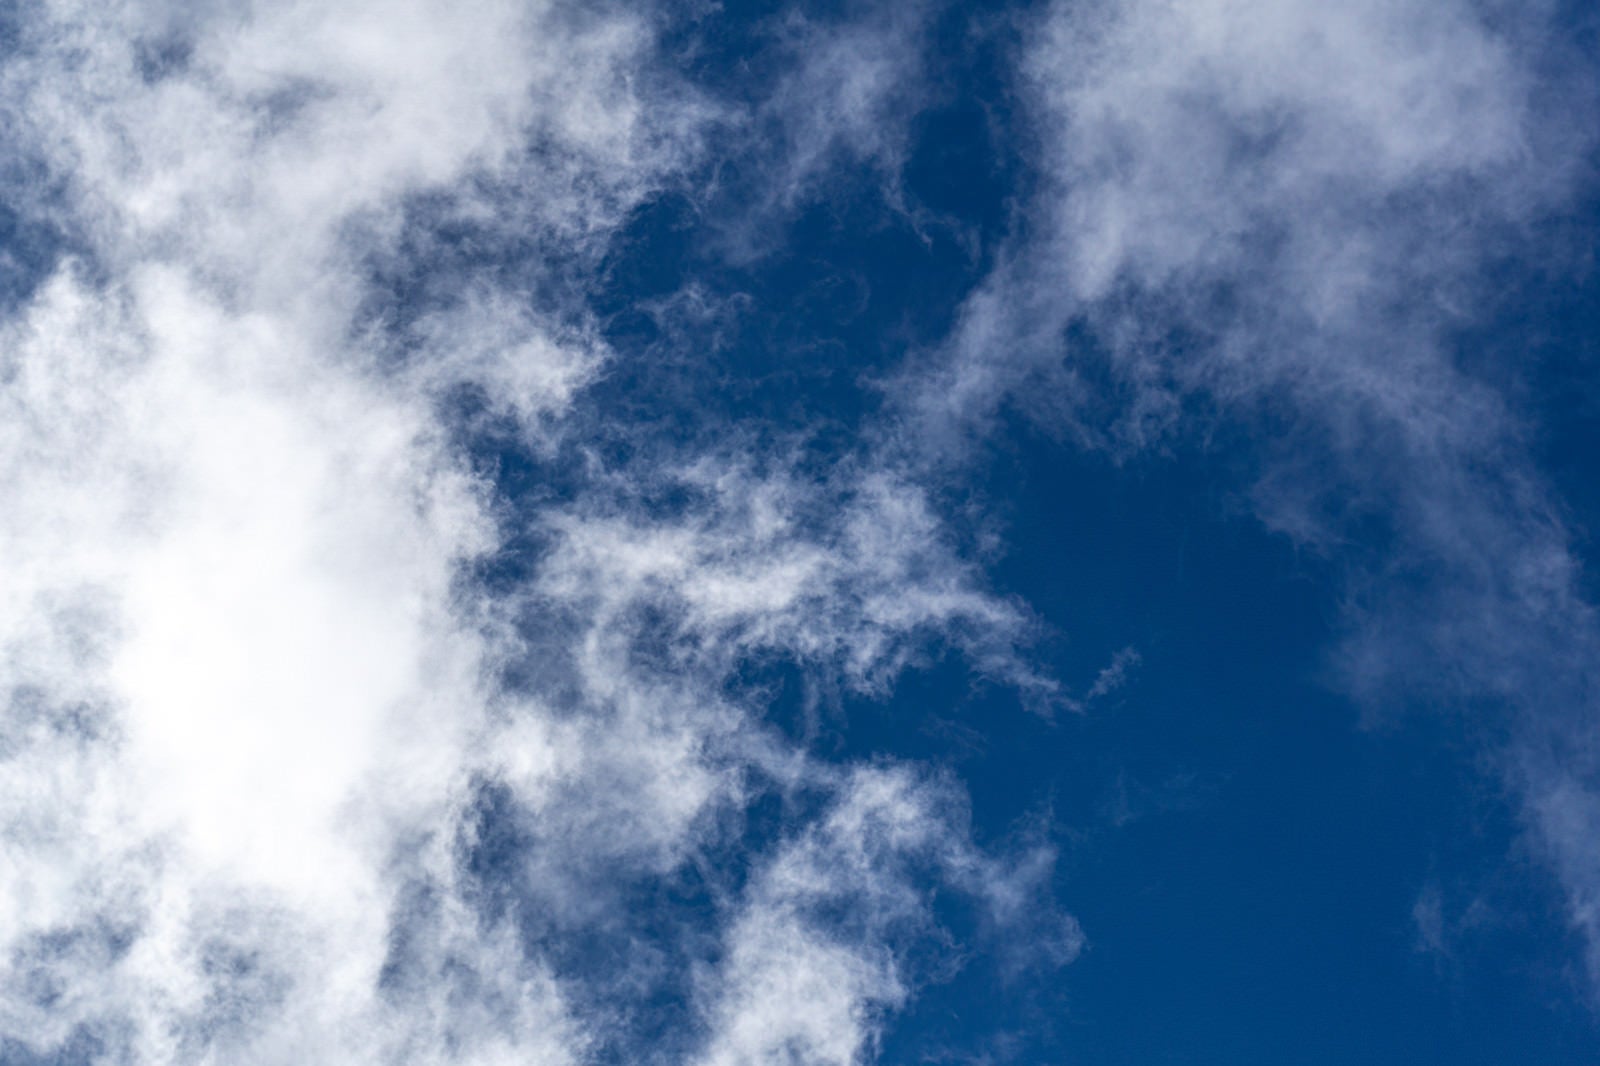 「白い雲が浮かぶ青い空」の写真